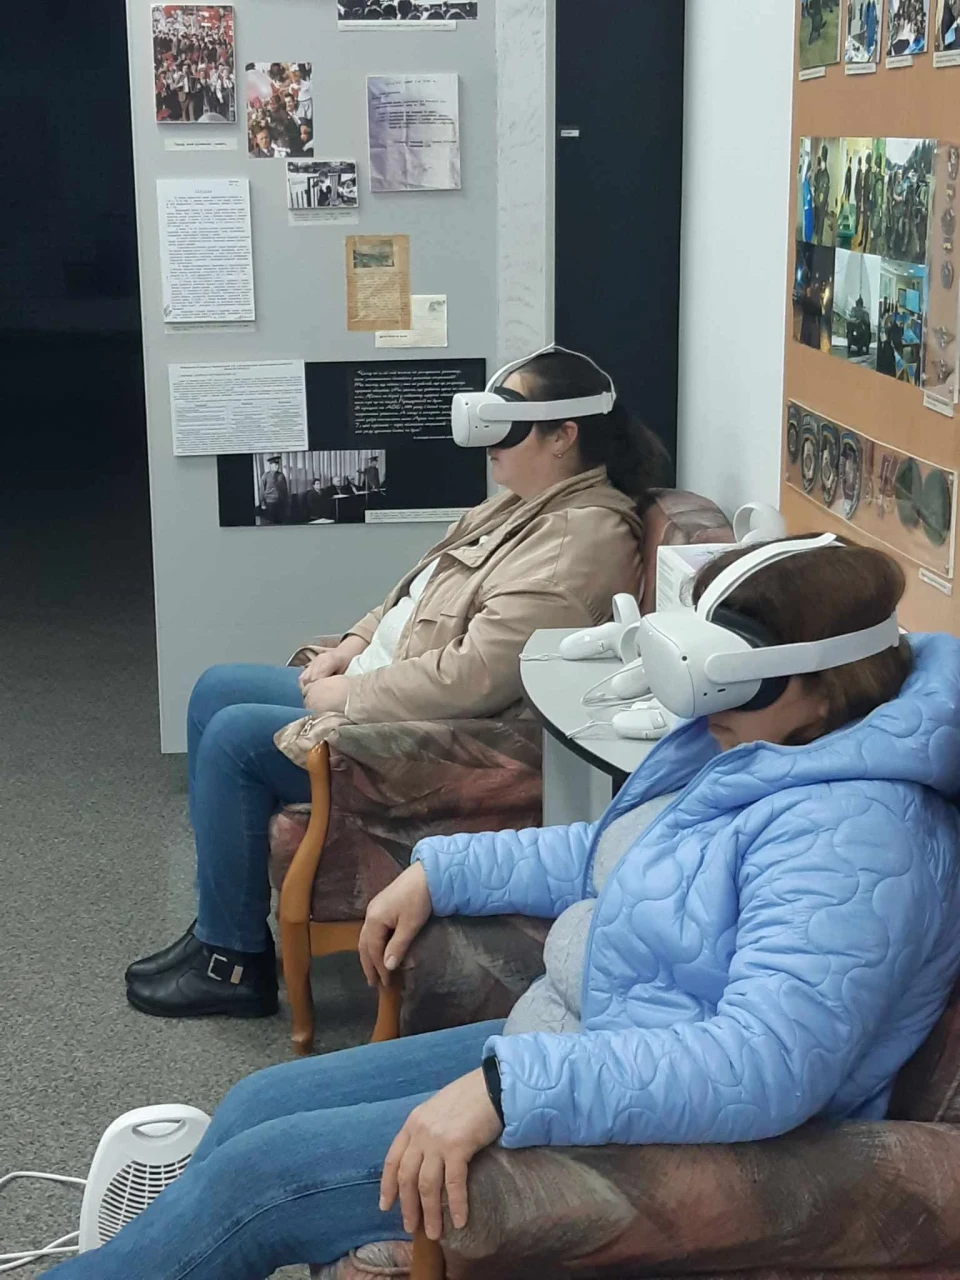 Подорожуйте у часі та просторі: Віртуальні реальності у Славутичі фото №1